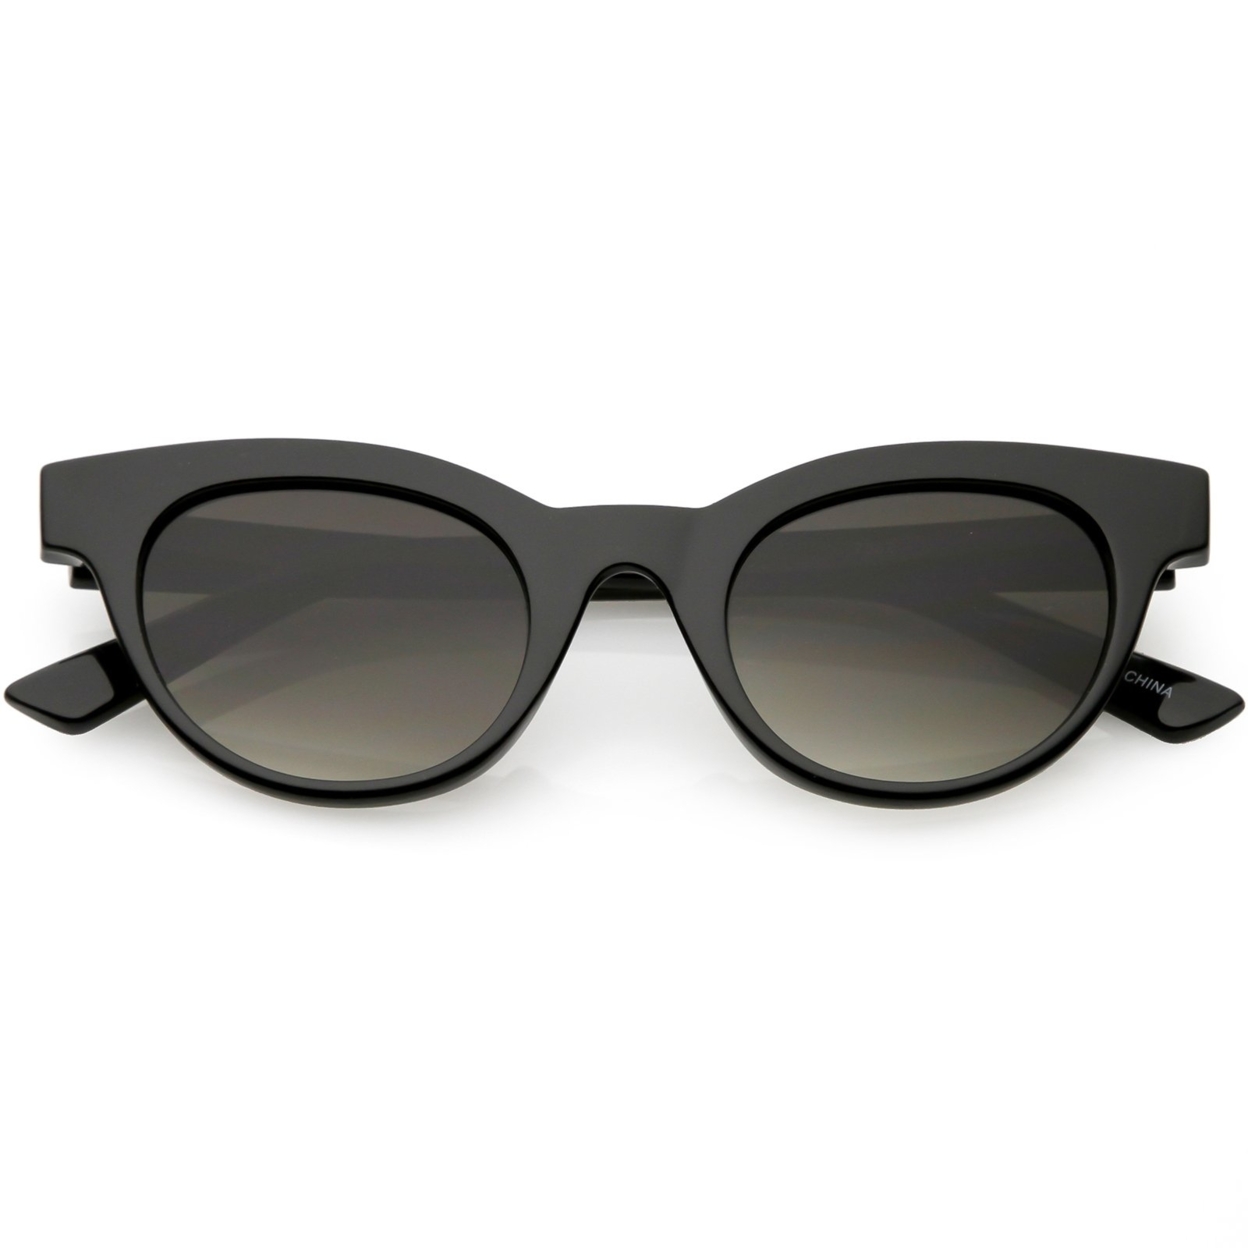 Women's Horn Rimmed Cat Eye Sunglasses Neutral Colored Round Lens Cat Eye Sunglasses 47mm - Shiny White / Smoke